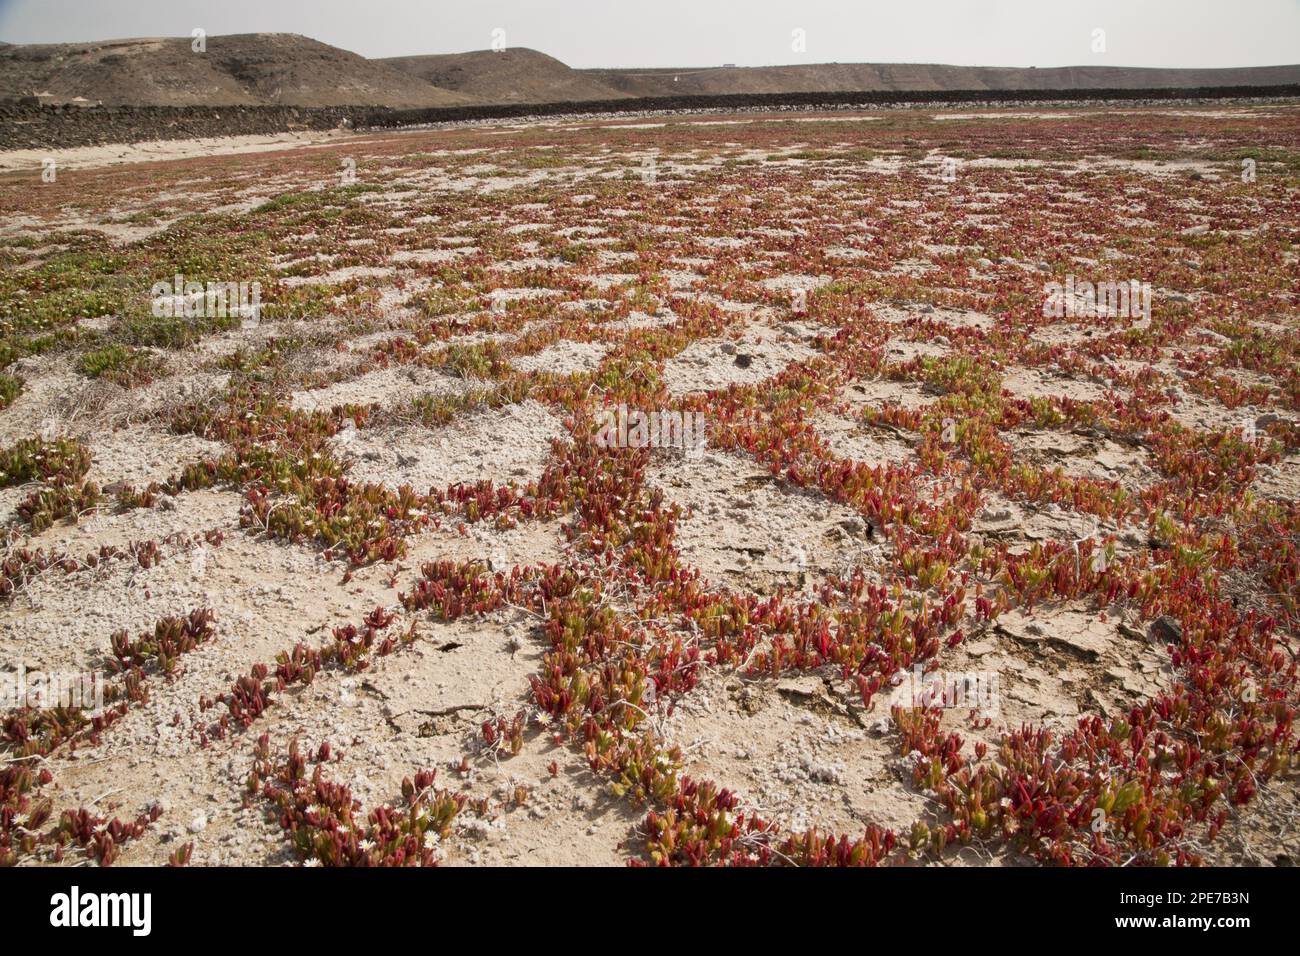 L'Iceplant de Slenderleaf (Mesembryanthemum nodiflorum) introduit des espèces, poussant dans des fissures de boue sur l'habitat saltpas, Salinas de Janubio, Lanzarote Banque D'Images